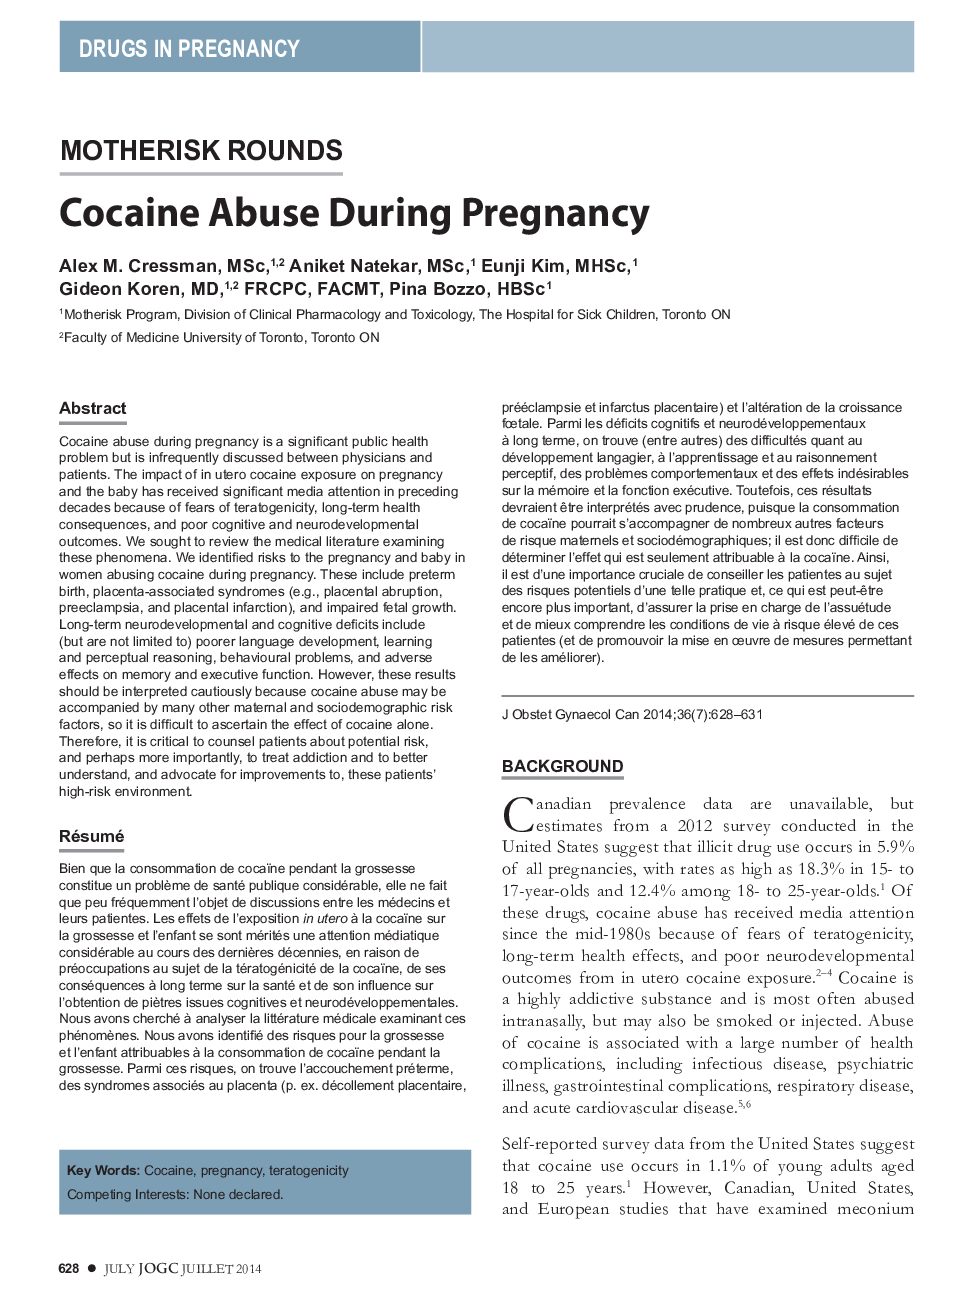 سوء مصرف کوکائین در حین بارداری 